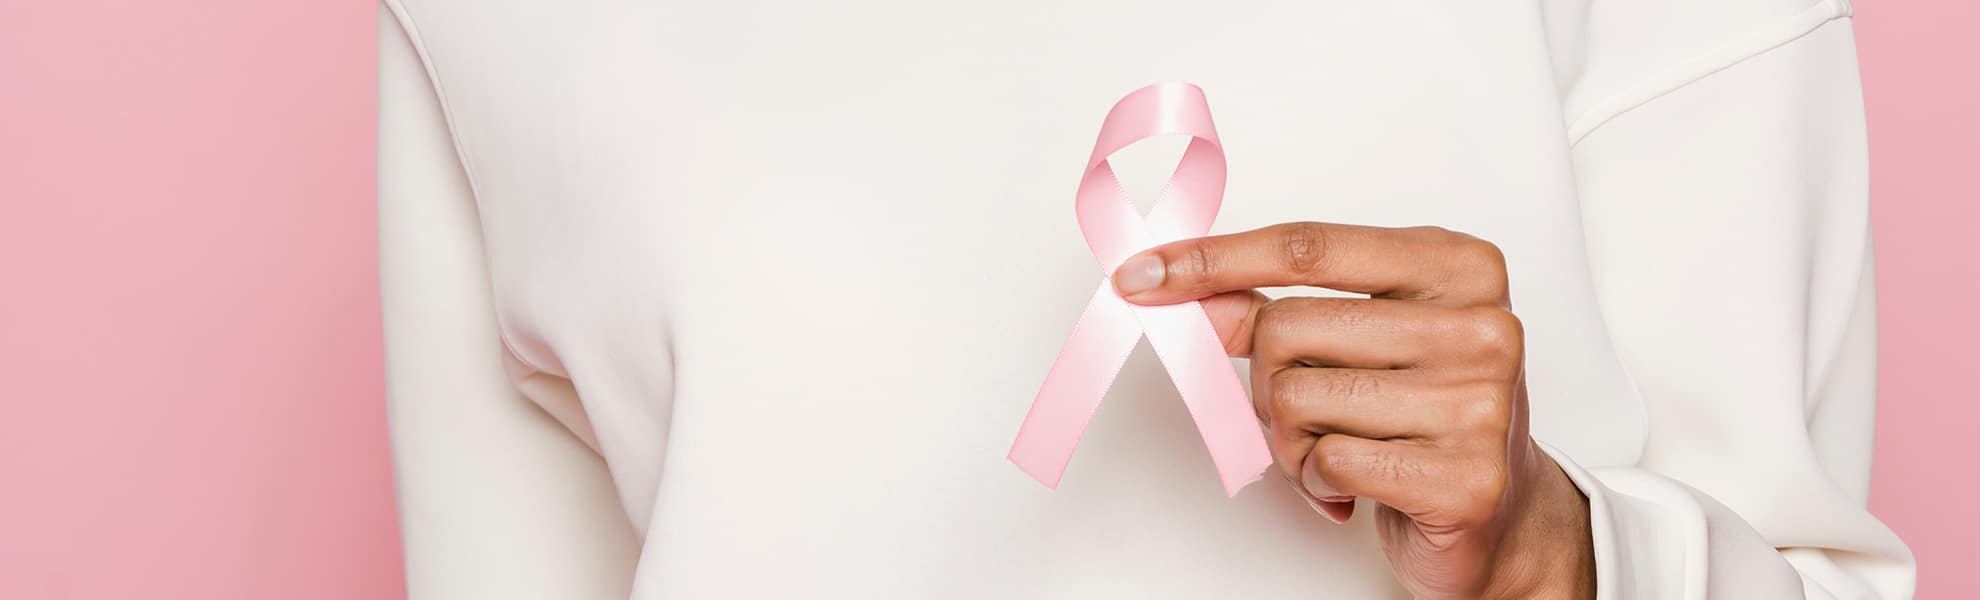 diagnostico-precoz-del-cancer-de-mama-como-anticiparnos-a-la-enfermedad-id-142